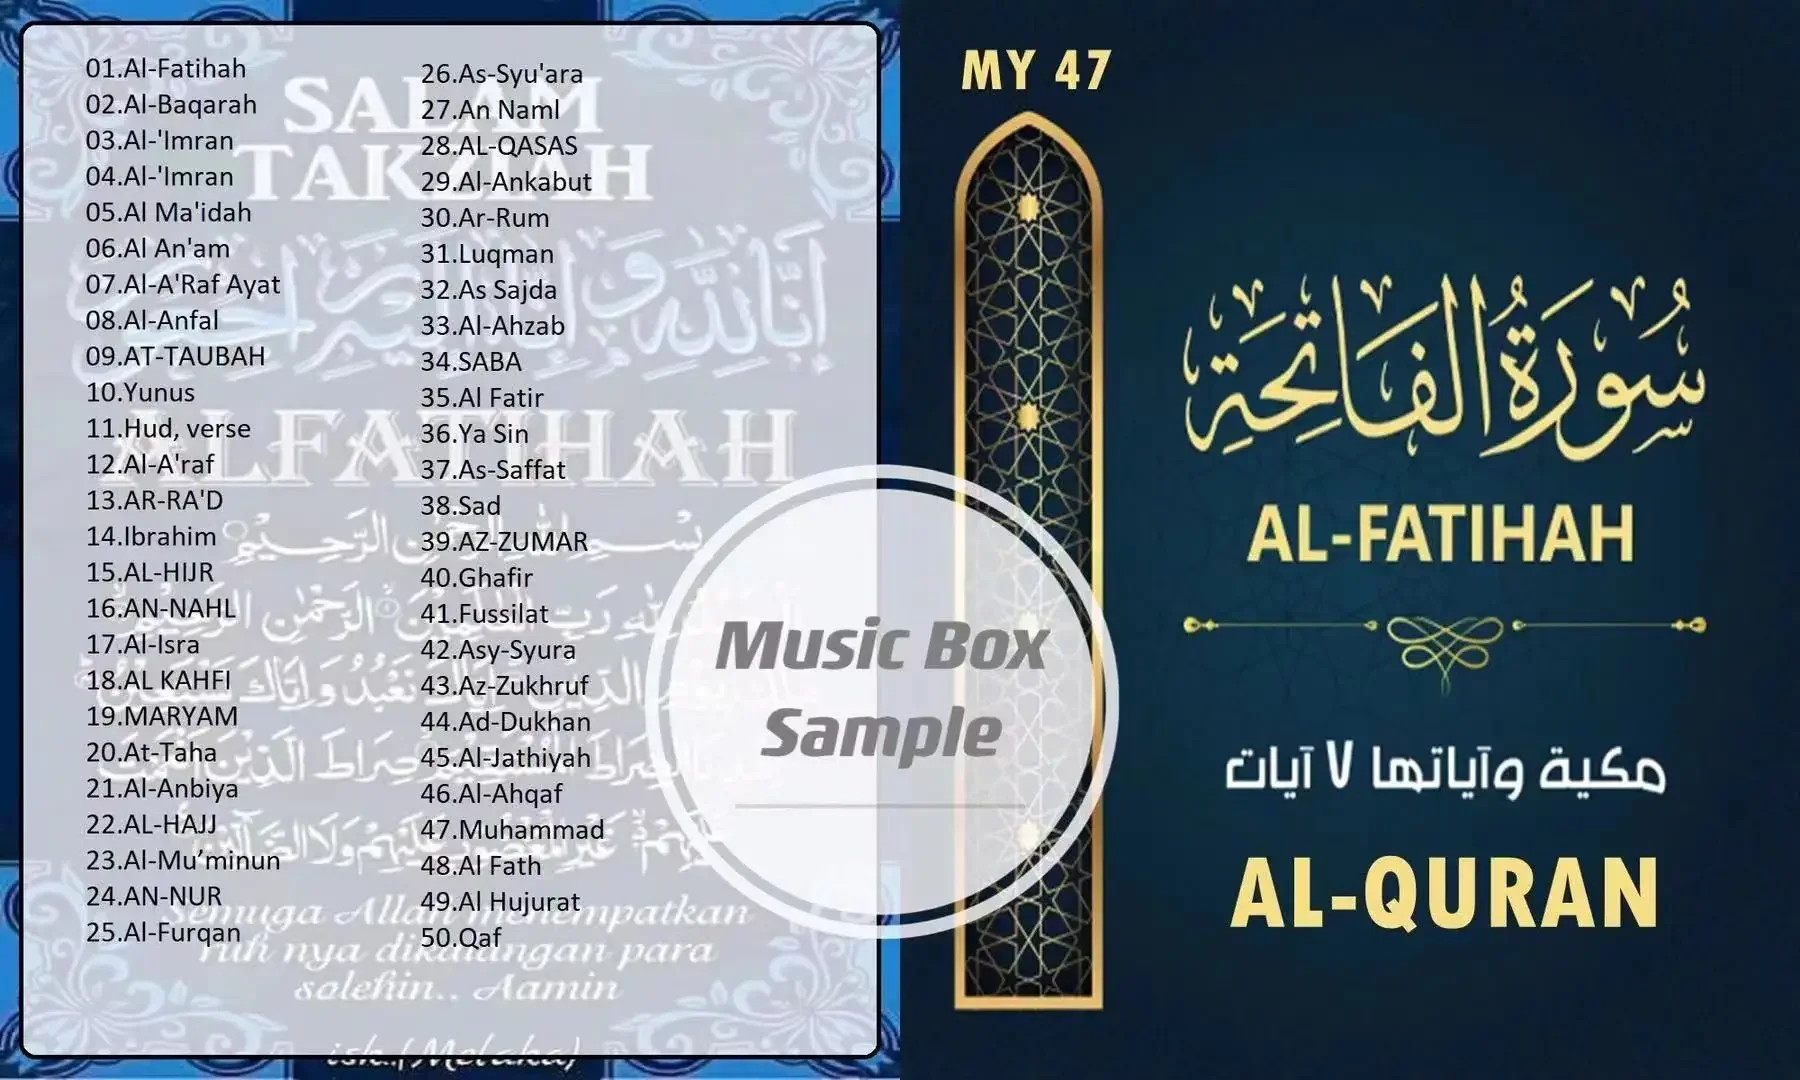 usb pendrive song AL fatihah AL-QURAN